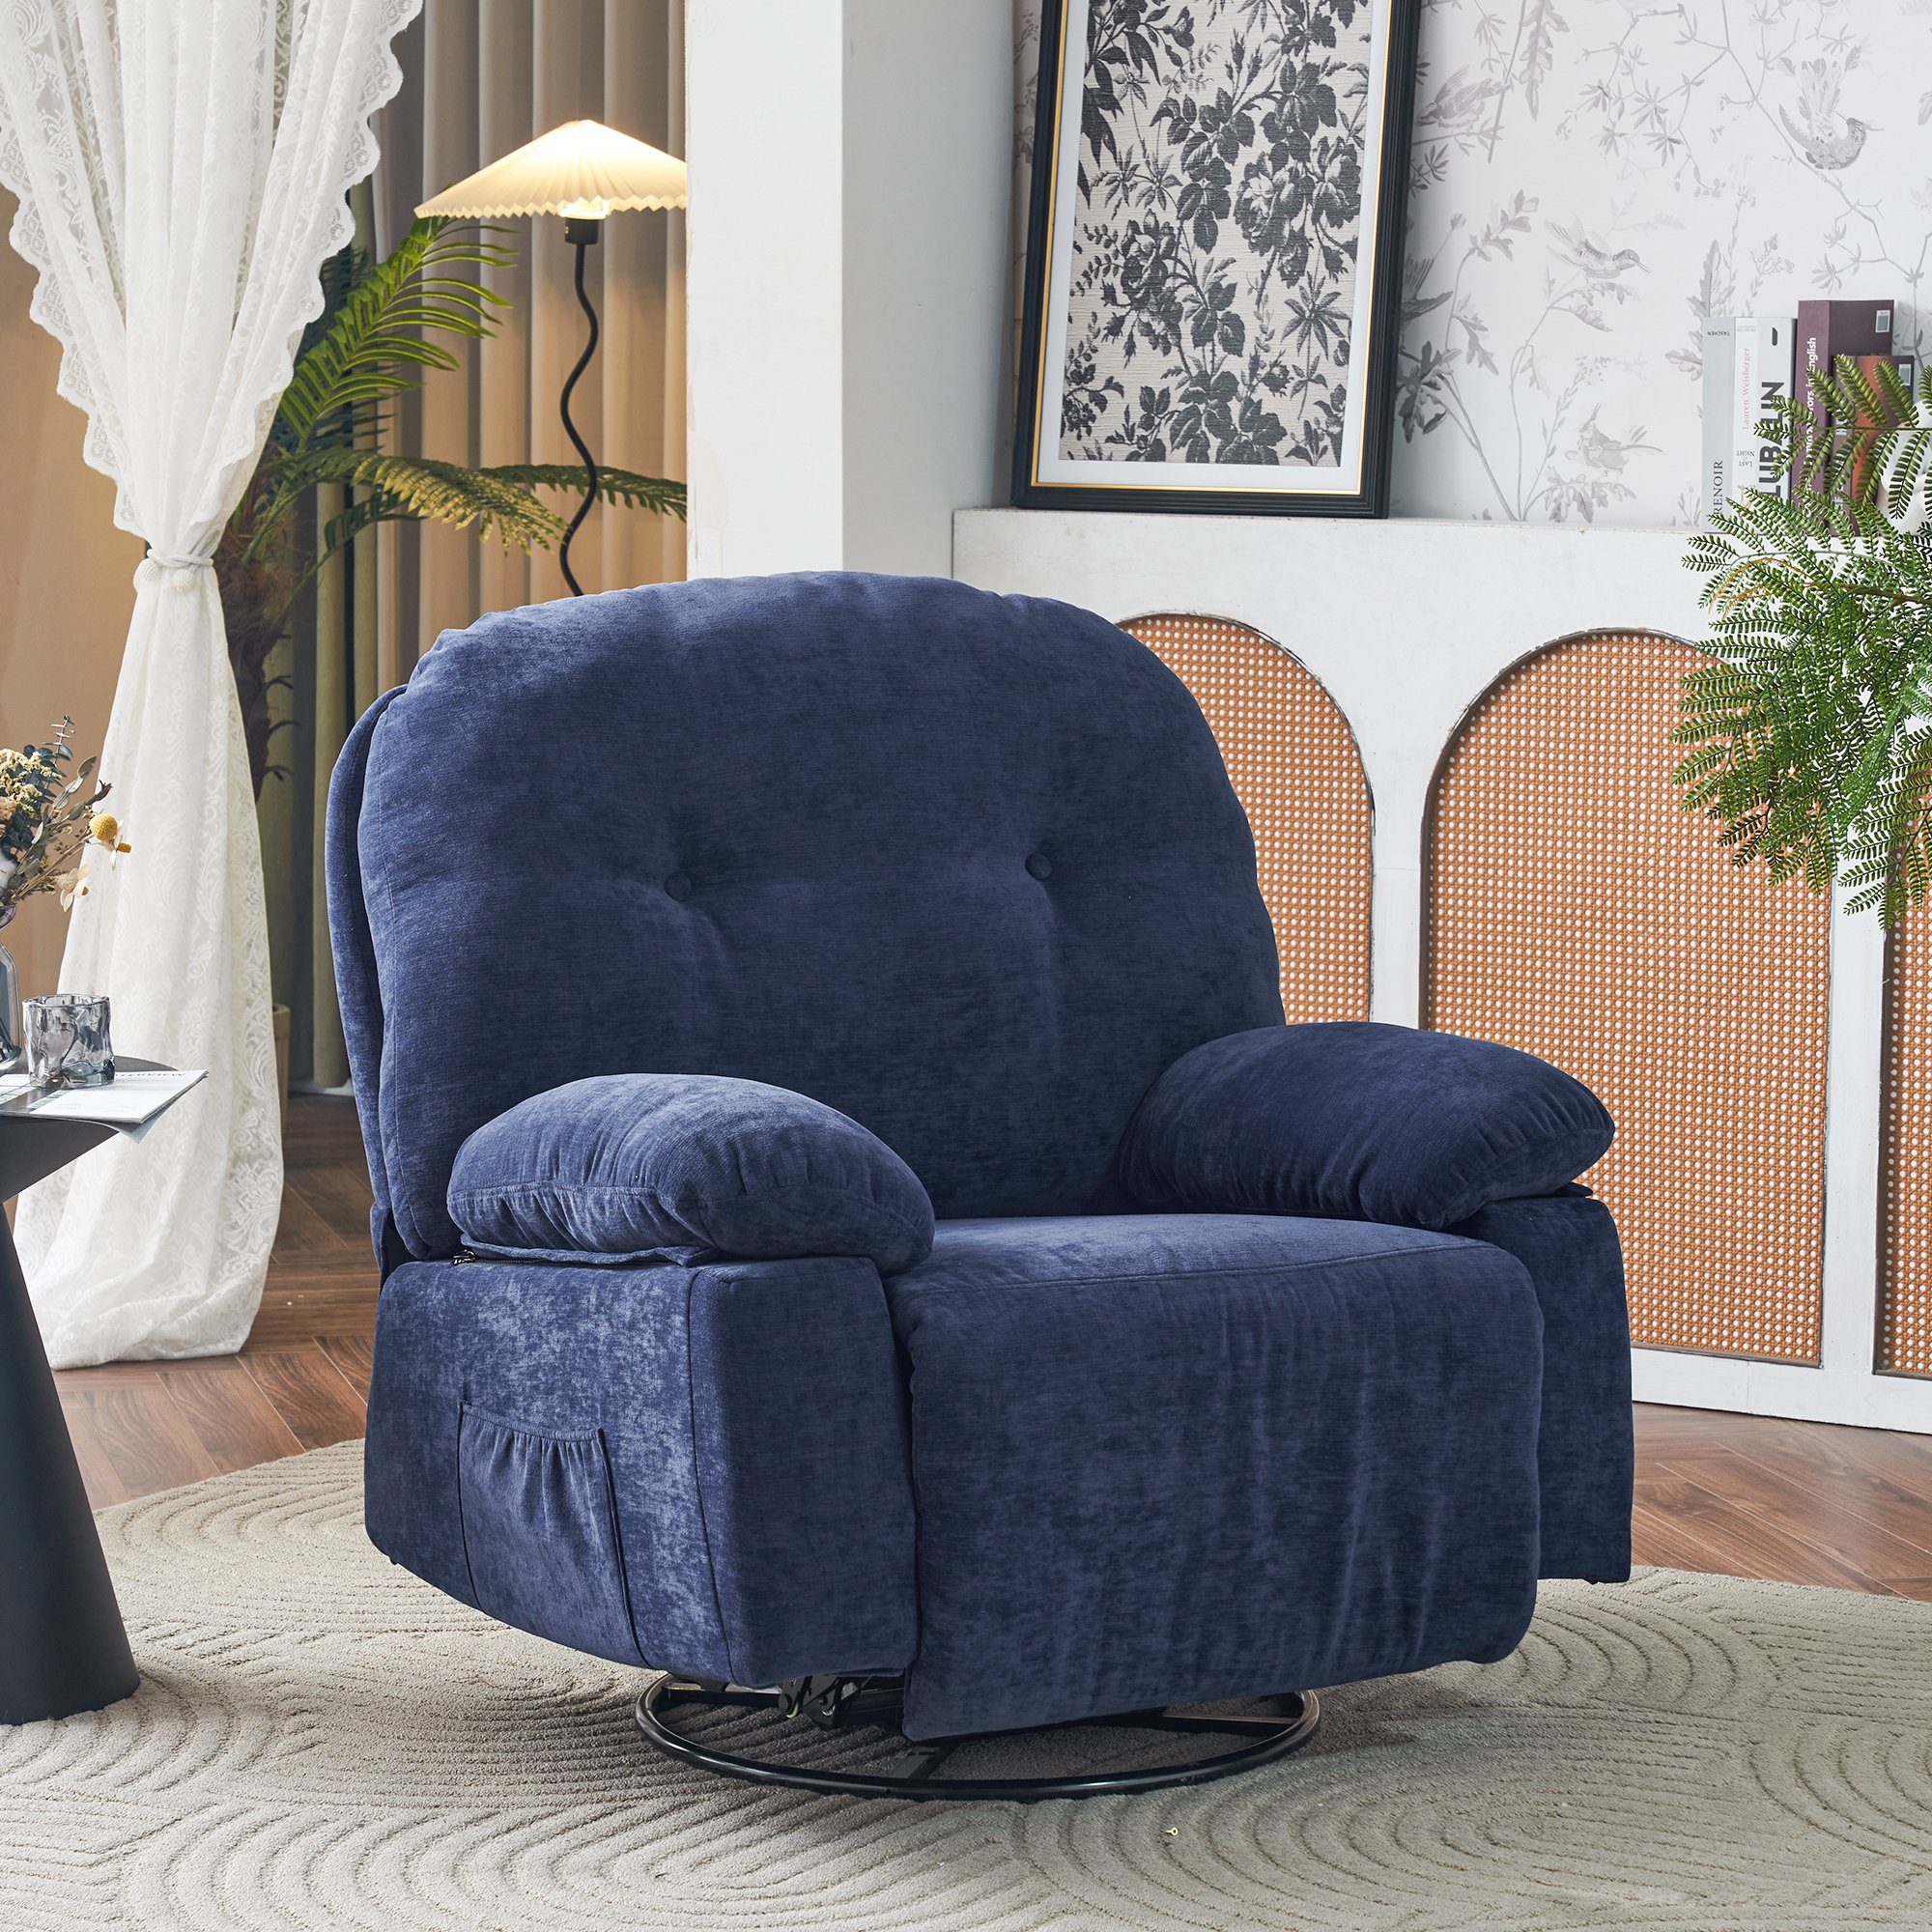 OKWISH TV-Sessel Relaxsessel mit Fernbedienung (Wohnzimmersessel, Heimkino-Loungesesse), mit 360° Drehfunktion und Timer Blau